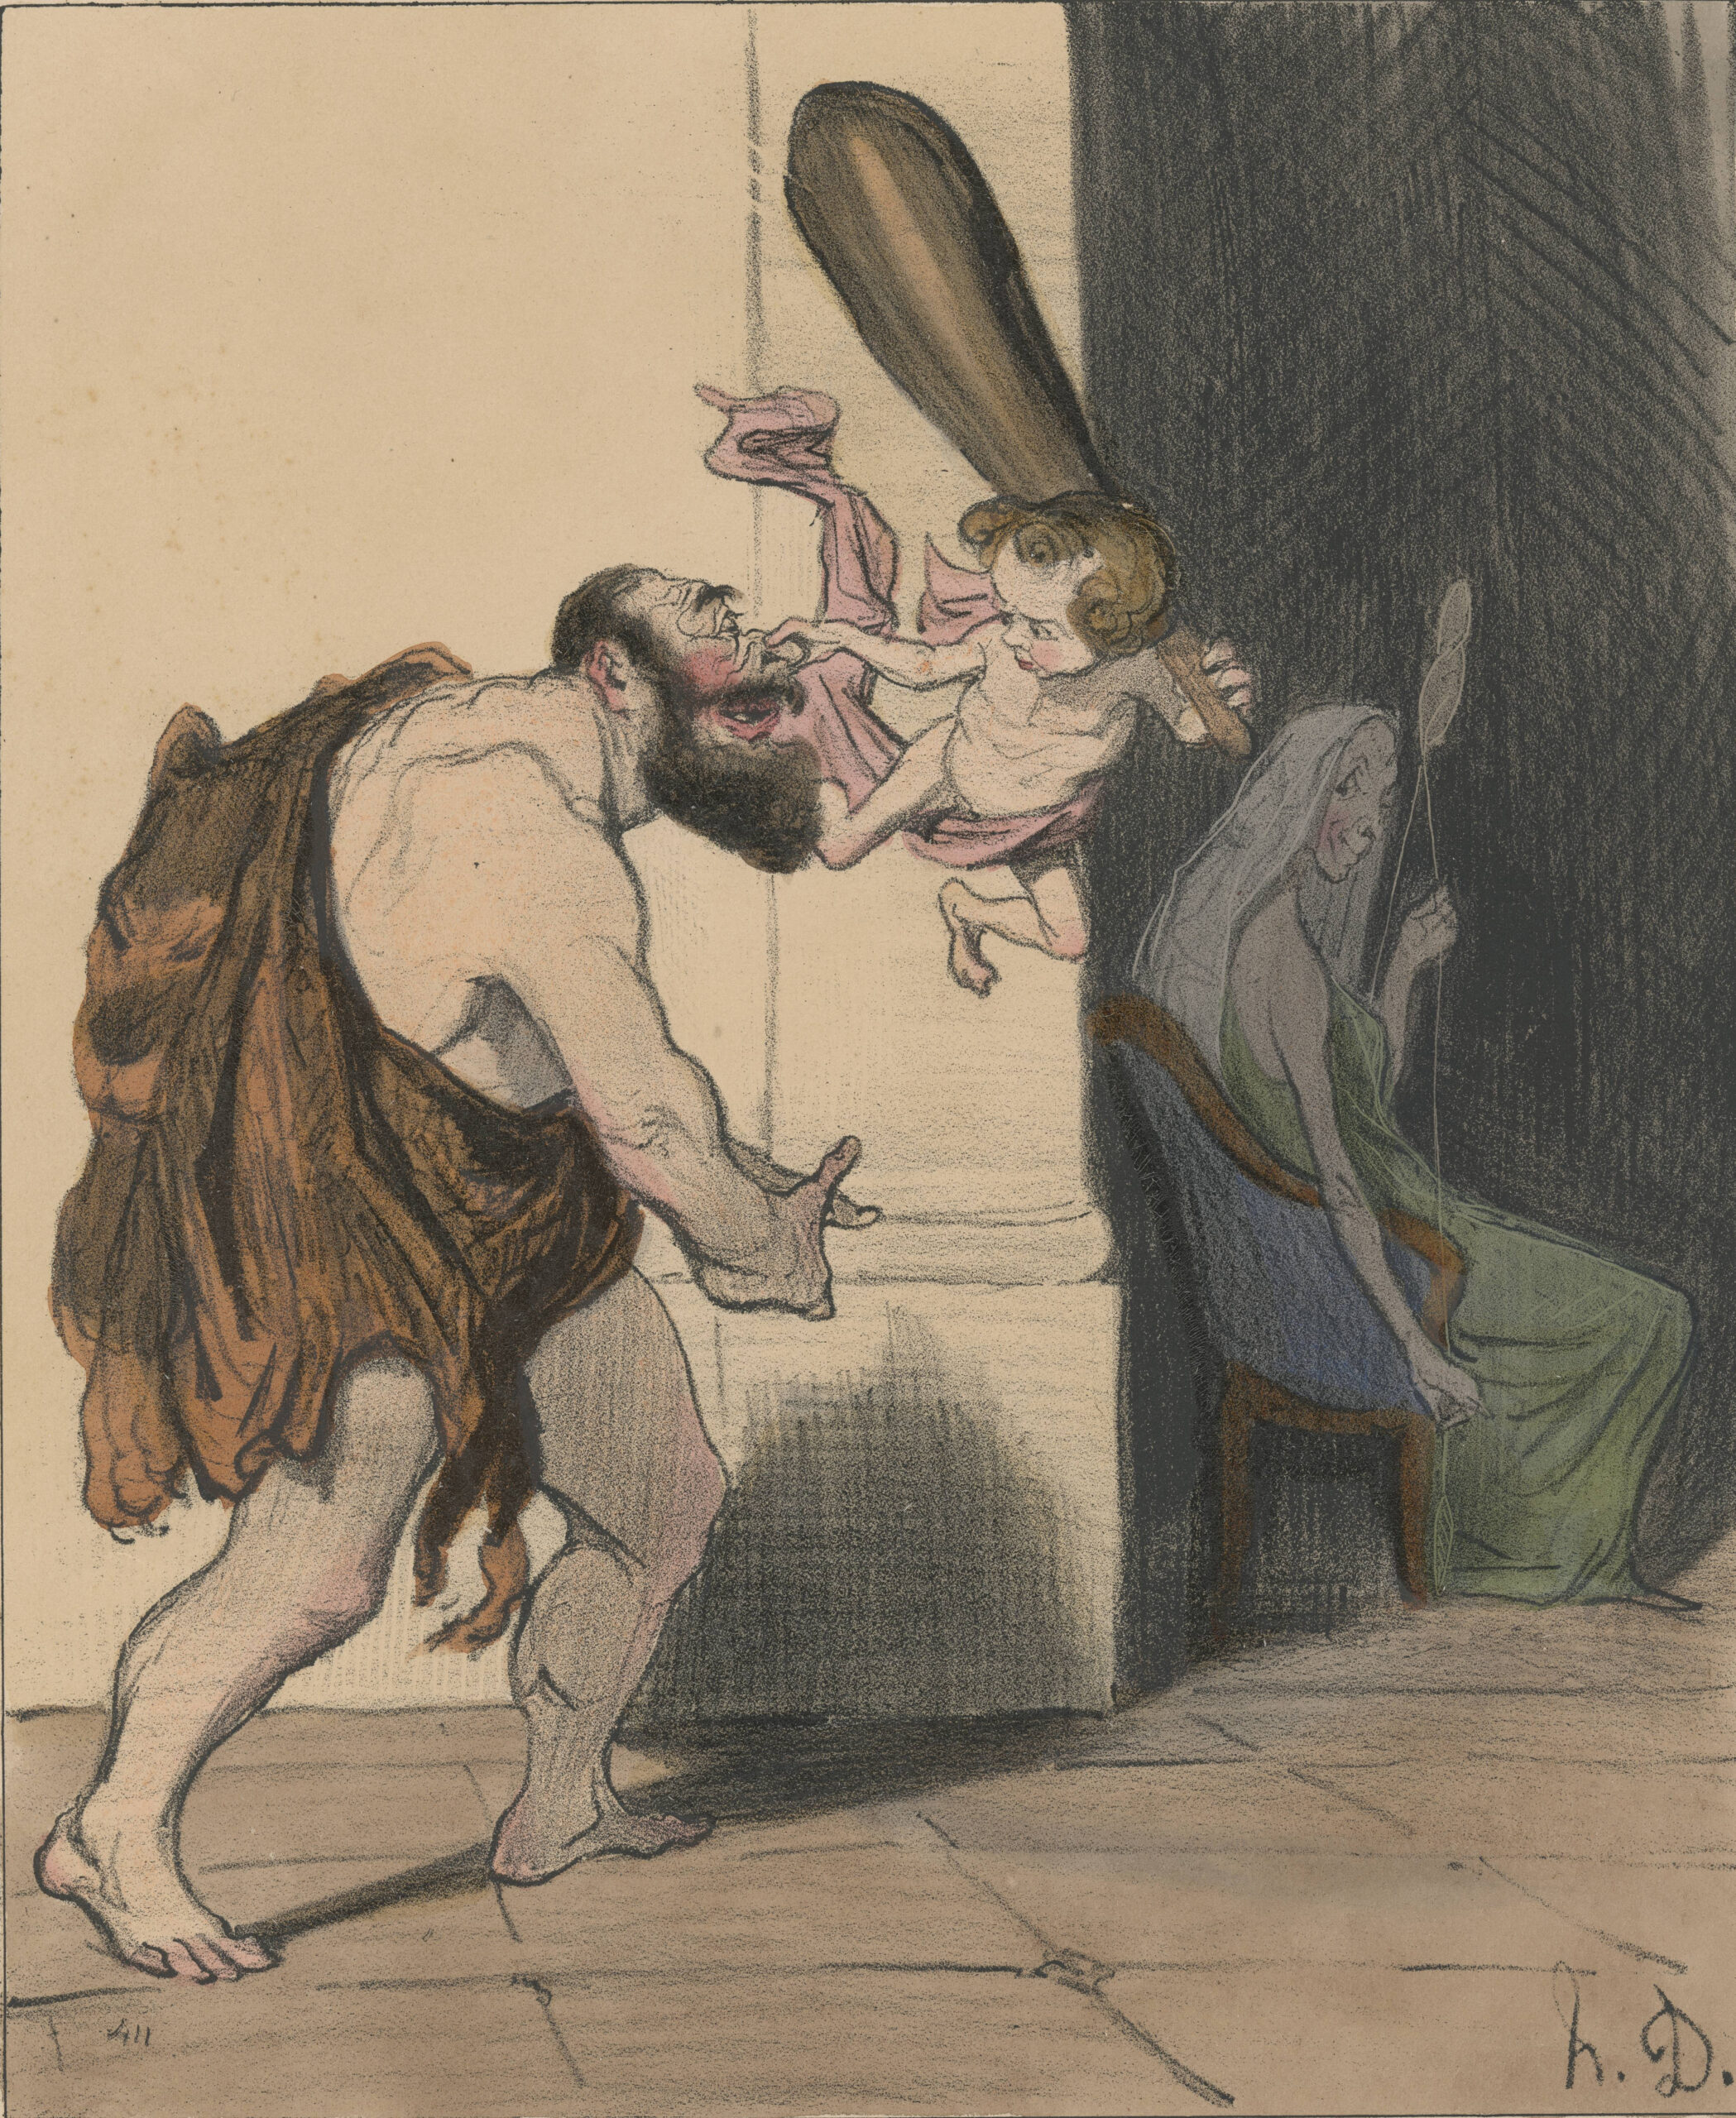 Eröffnung der Ausstellung "Antike auf die Schippe genommen. Karikaturen von Honoré Daumier (1808-1879)"